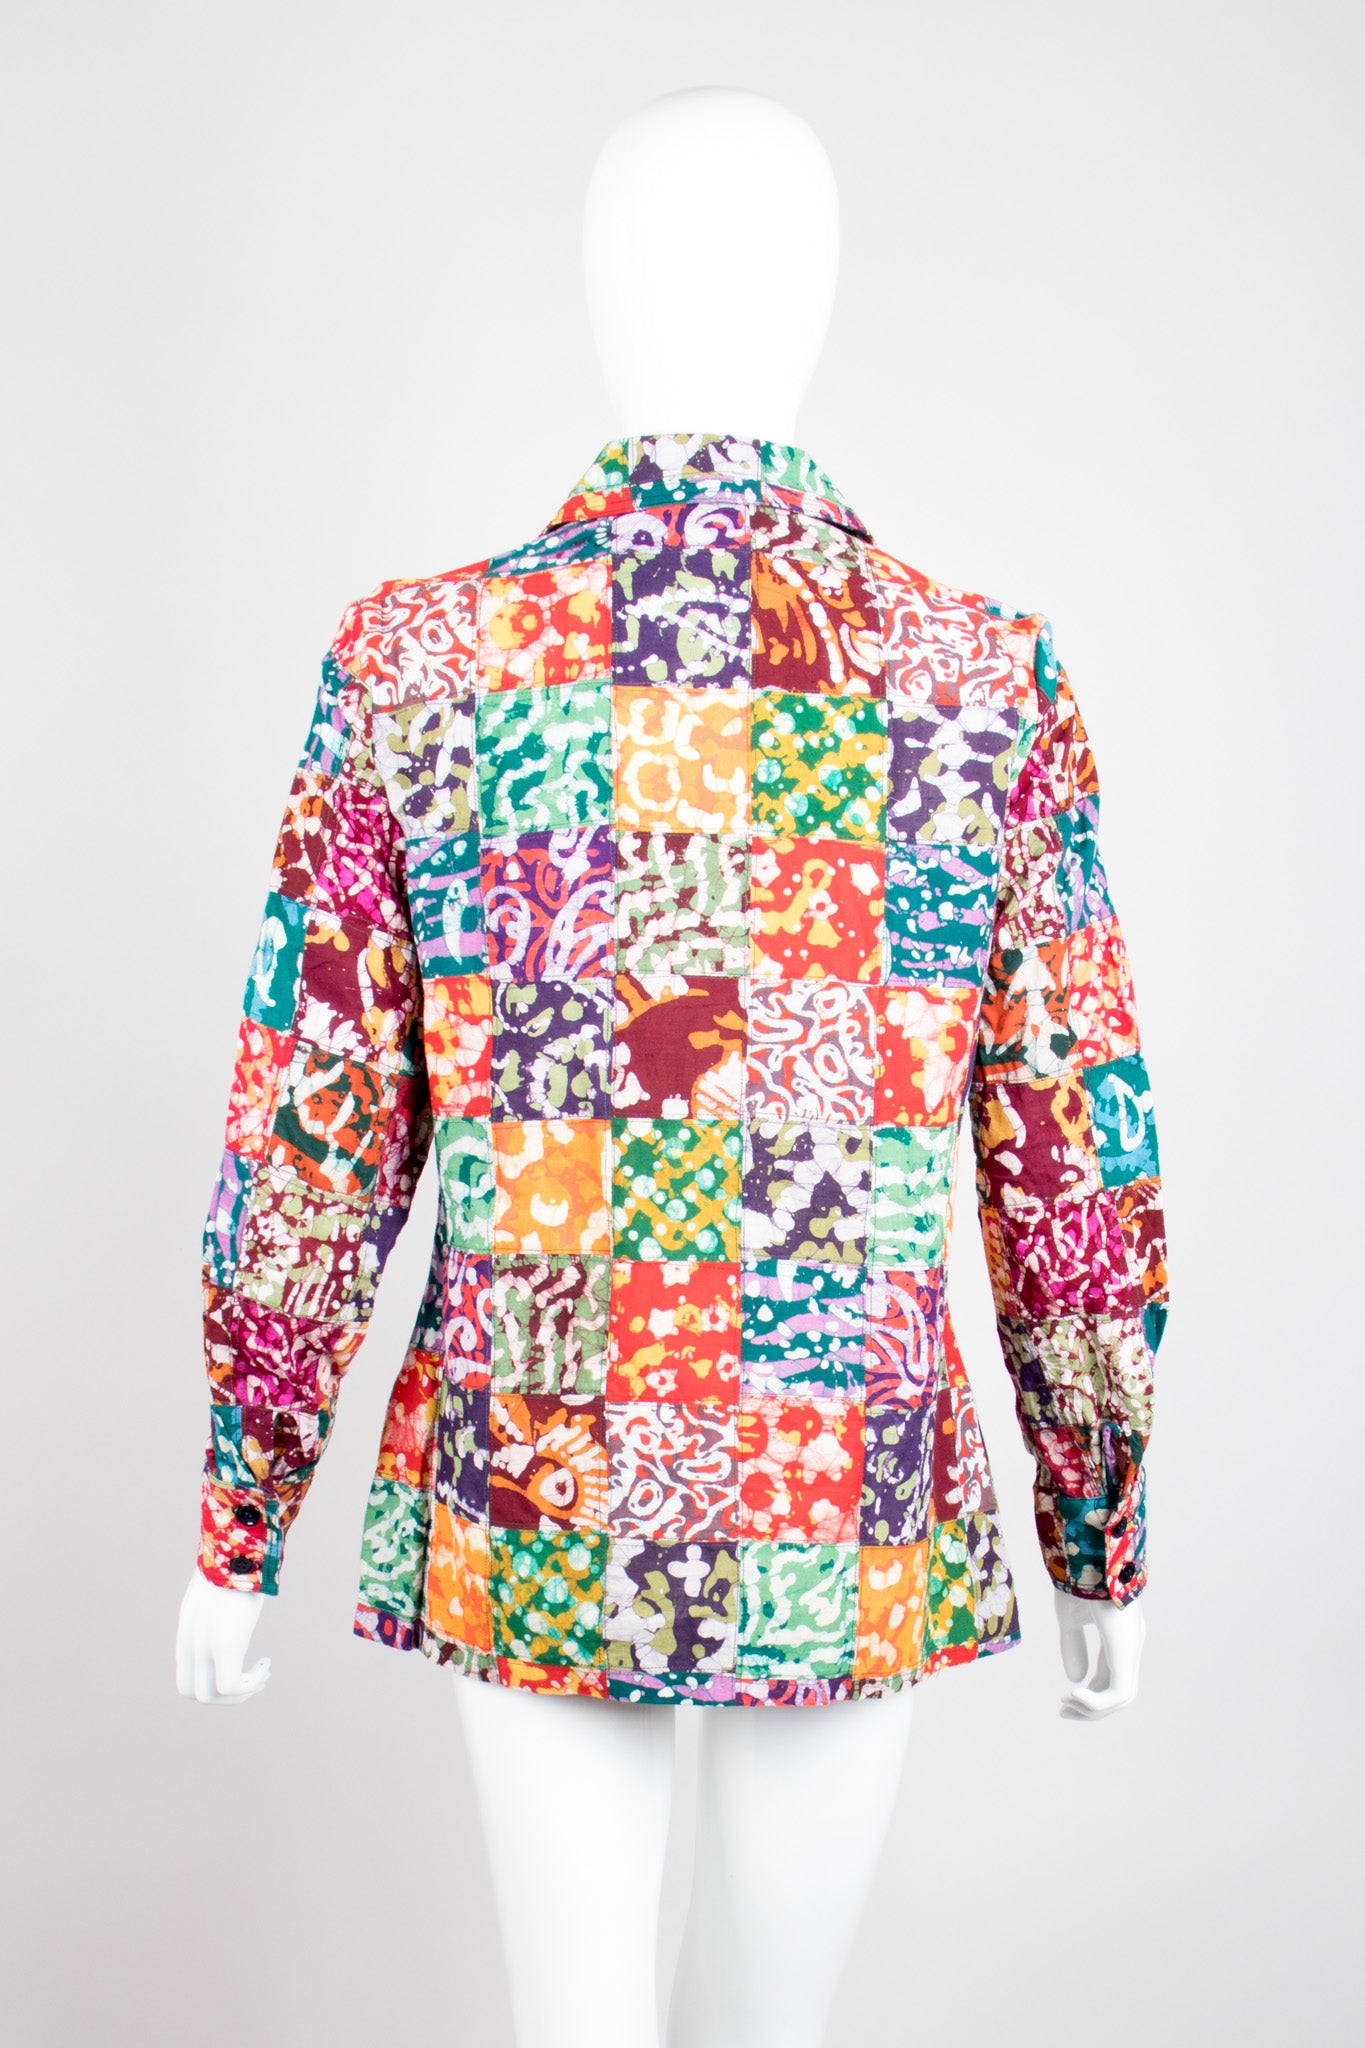 Joseph Magnin Vintage Lace Up Patchwork Batik Shirt